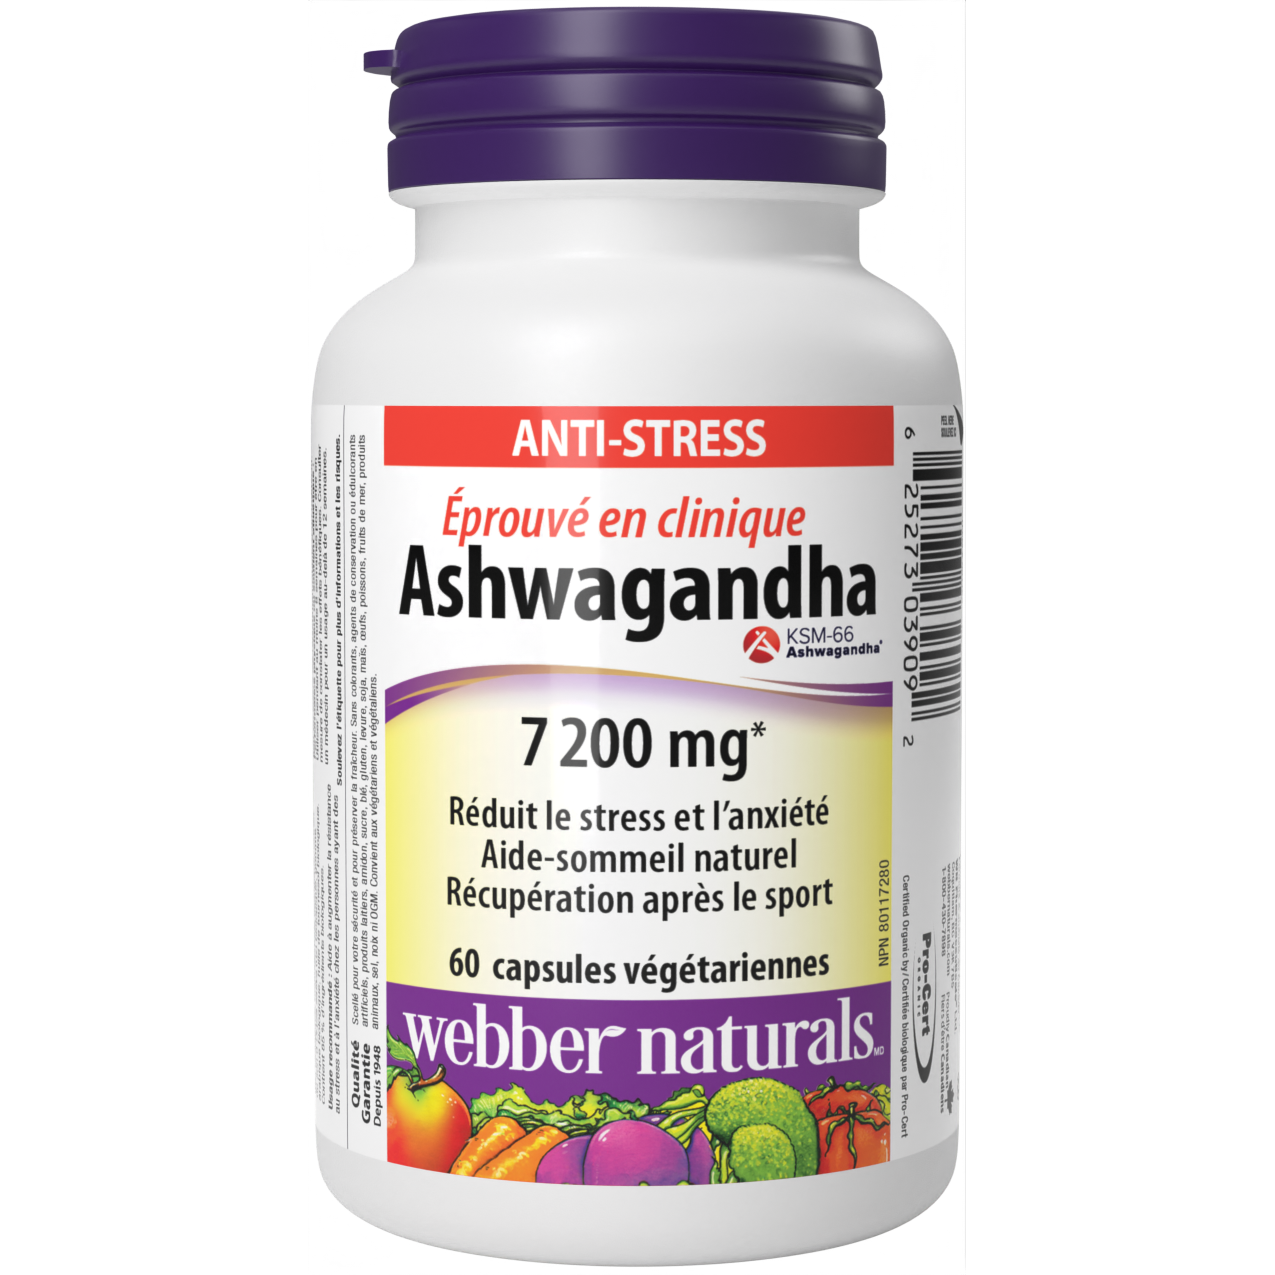 Ashwagandha for Webber Naturals|v|hi-res|WN3909